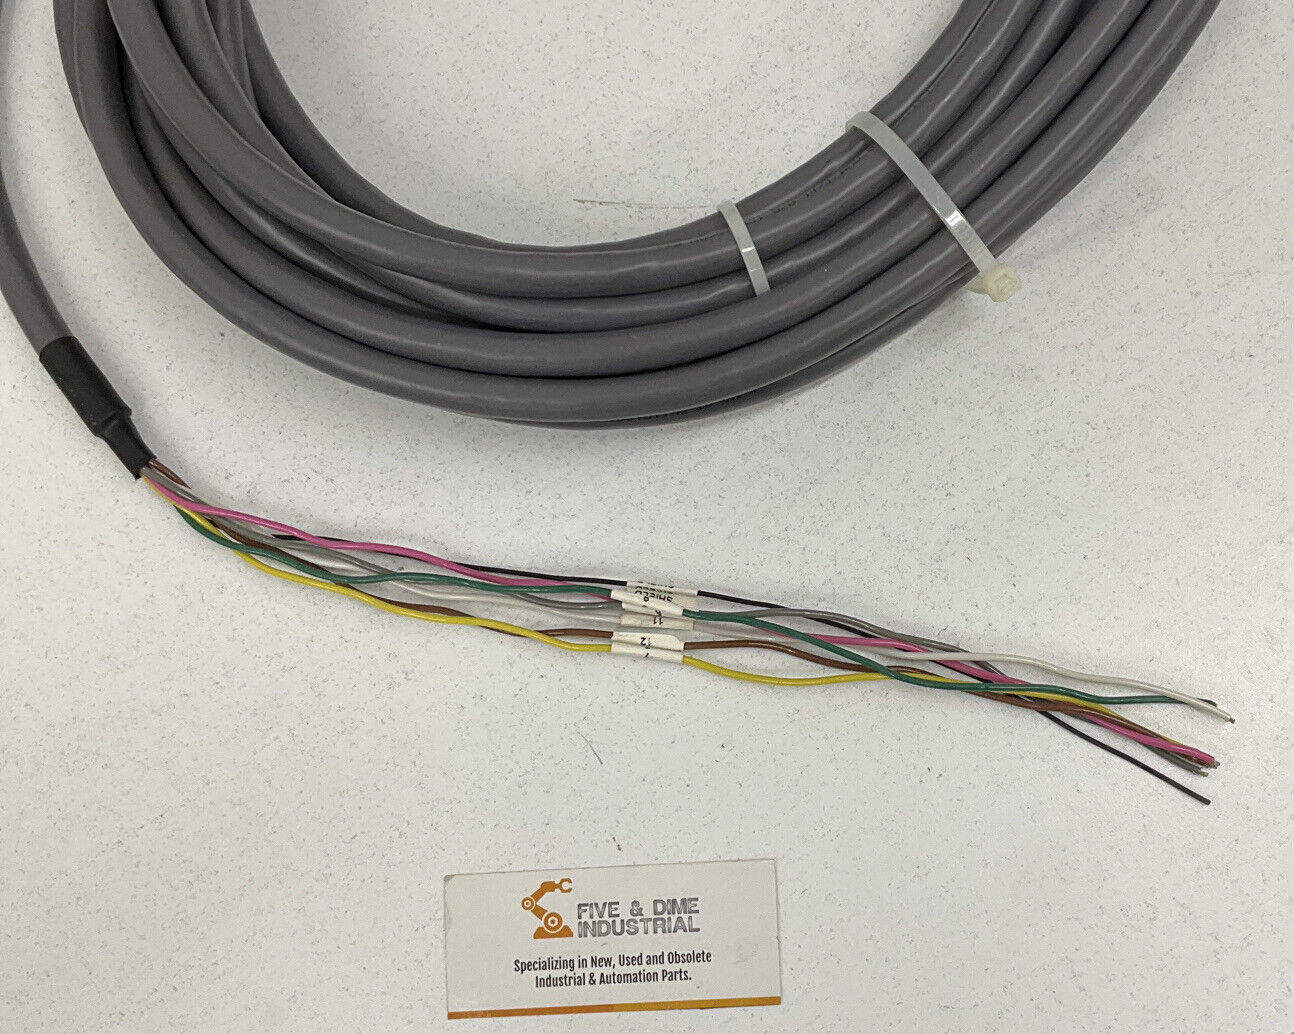 KUKA BK11157736 New Cable Assembly (CBL124)